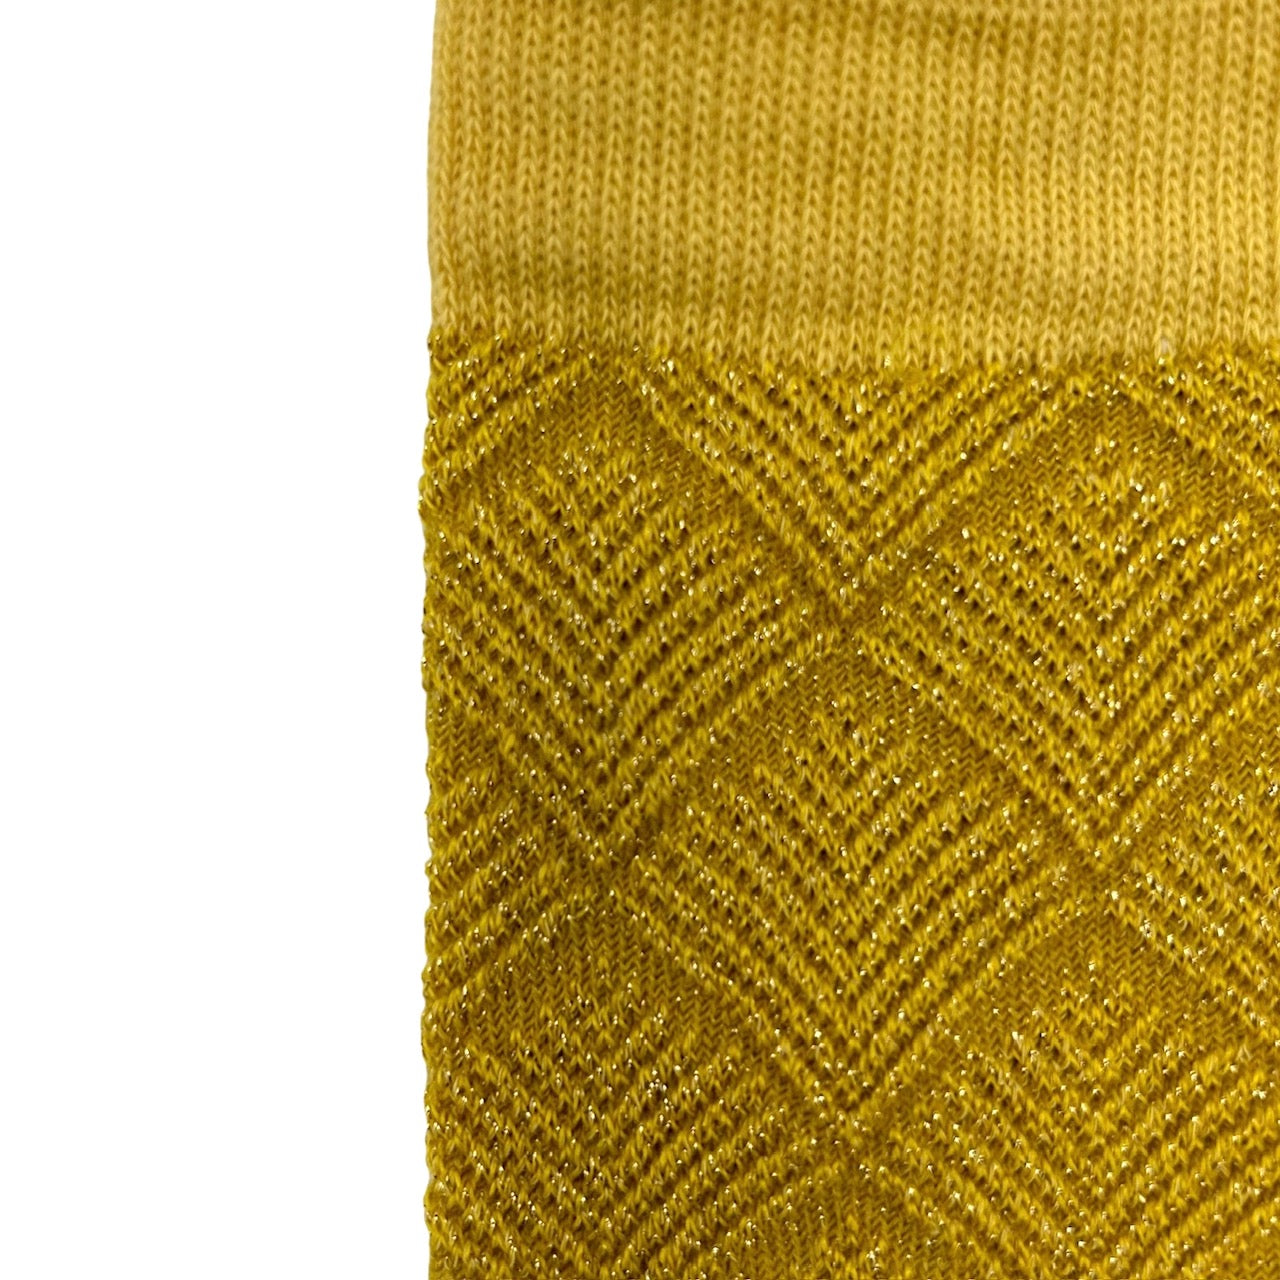 Paris socks in lemon with a pineapple brooch